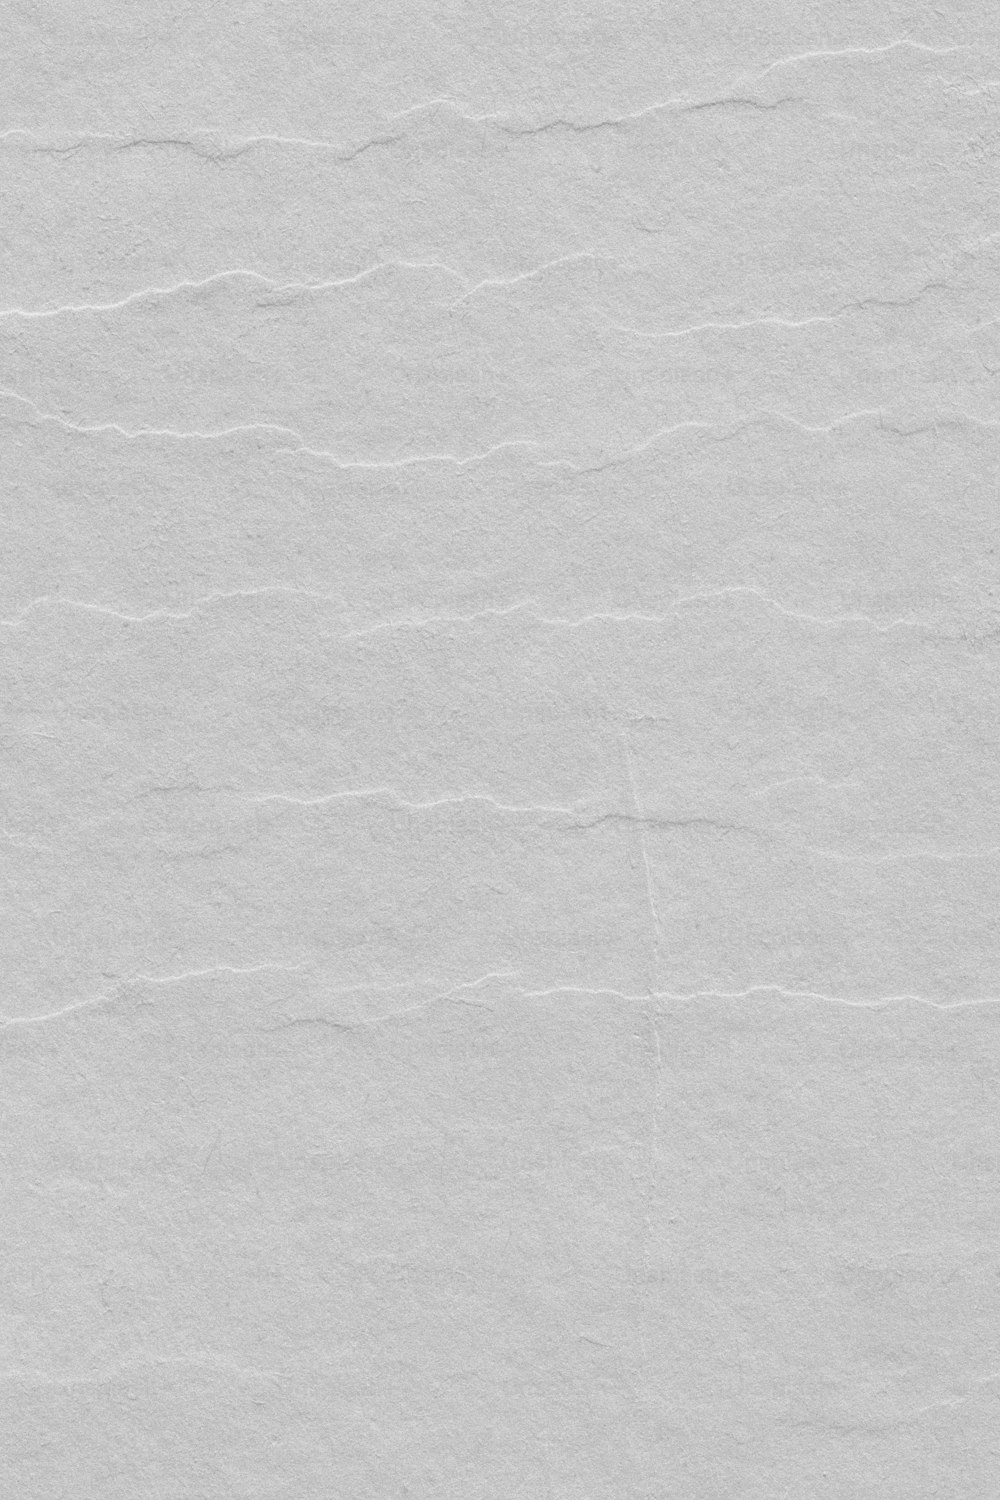 un pezzo di carta bianca con alcune linee